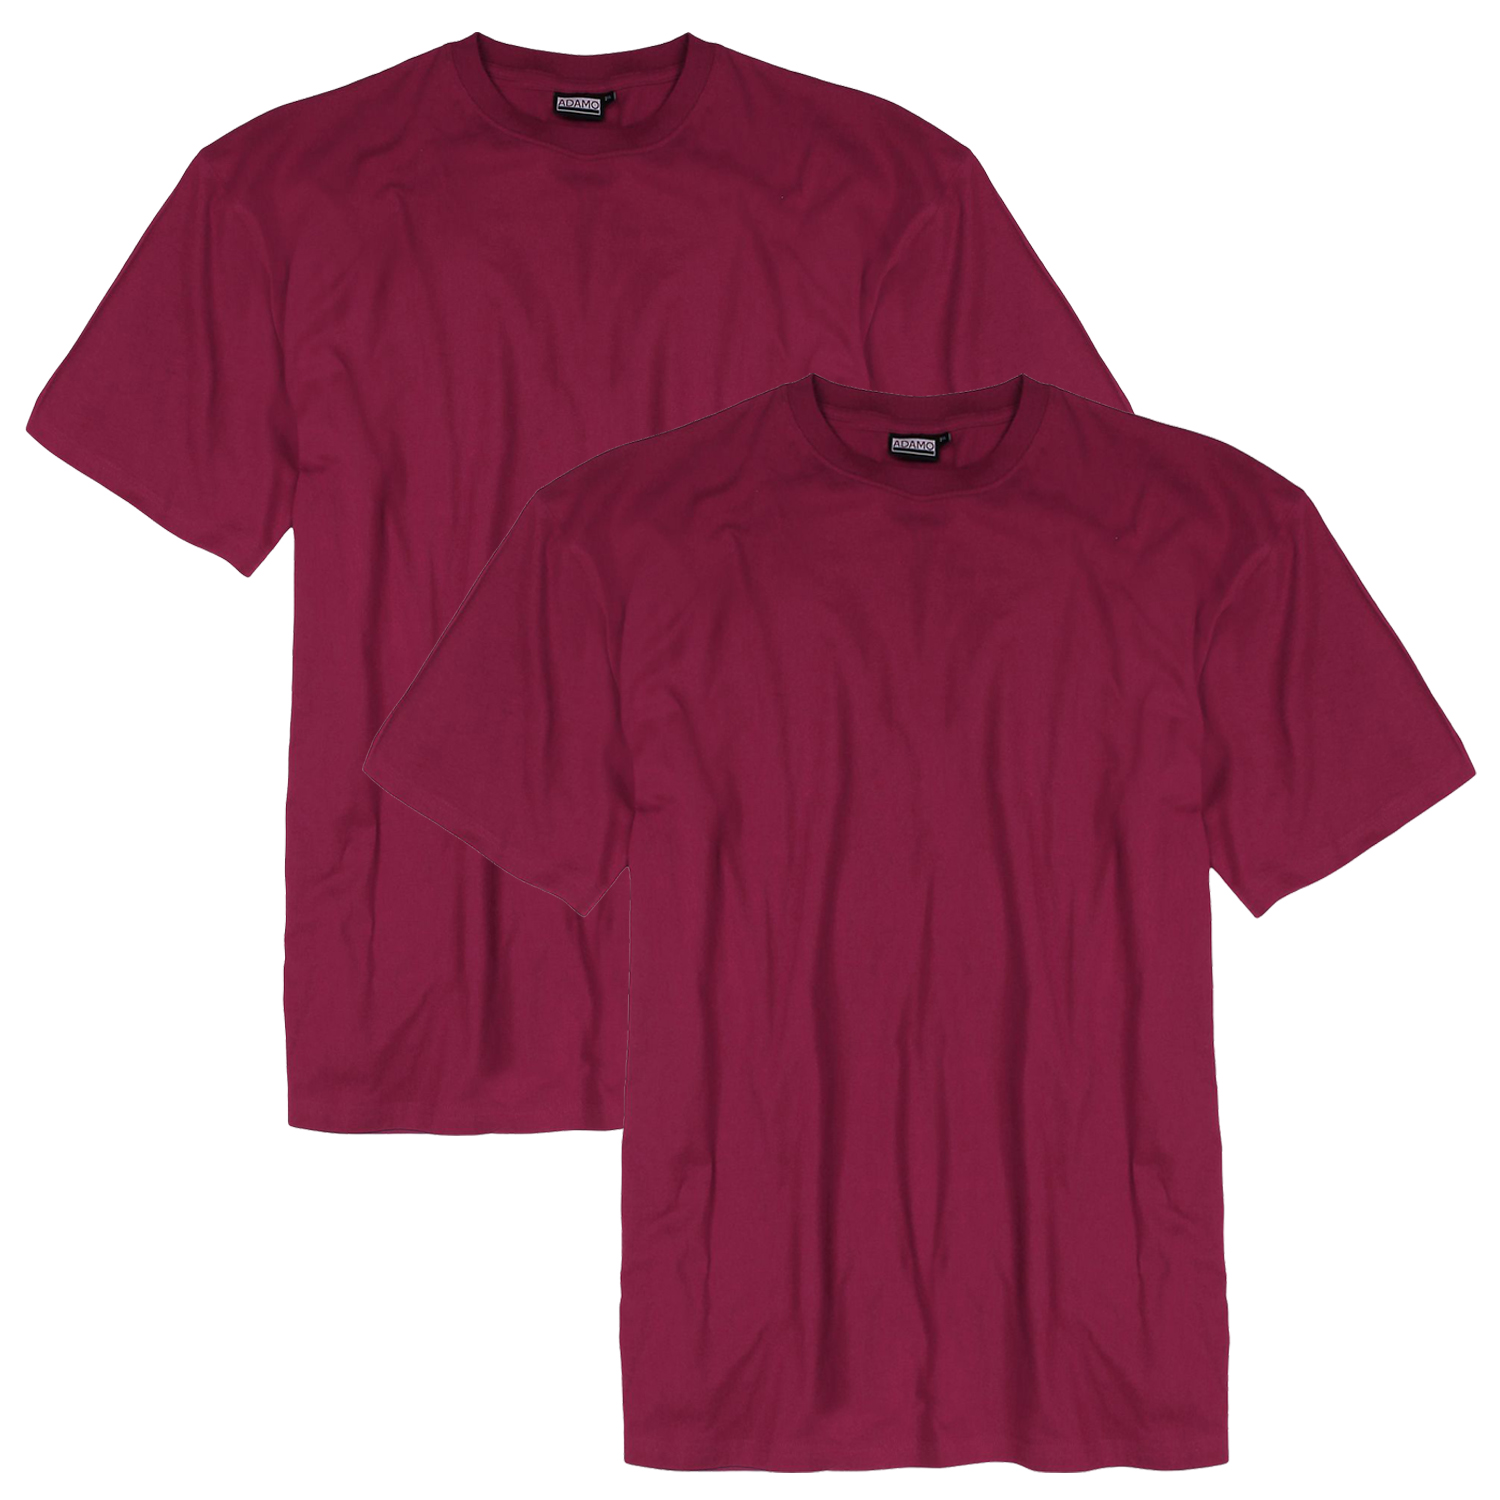 Herren T-Shirt mit Rundhalsausschnitt COMFORT FIT in brombeer- rot Serie Marlon von Adamo in Übergrößen bis 12XL - Doppelpack